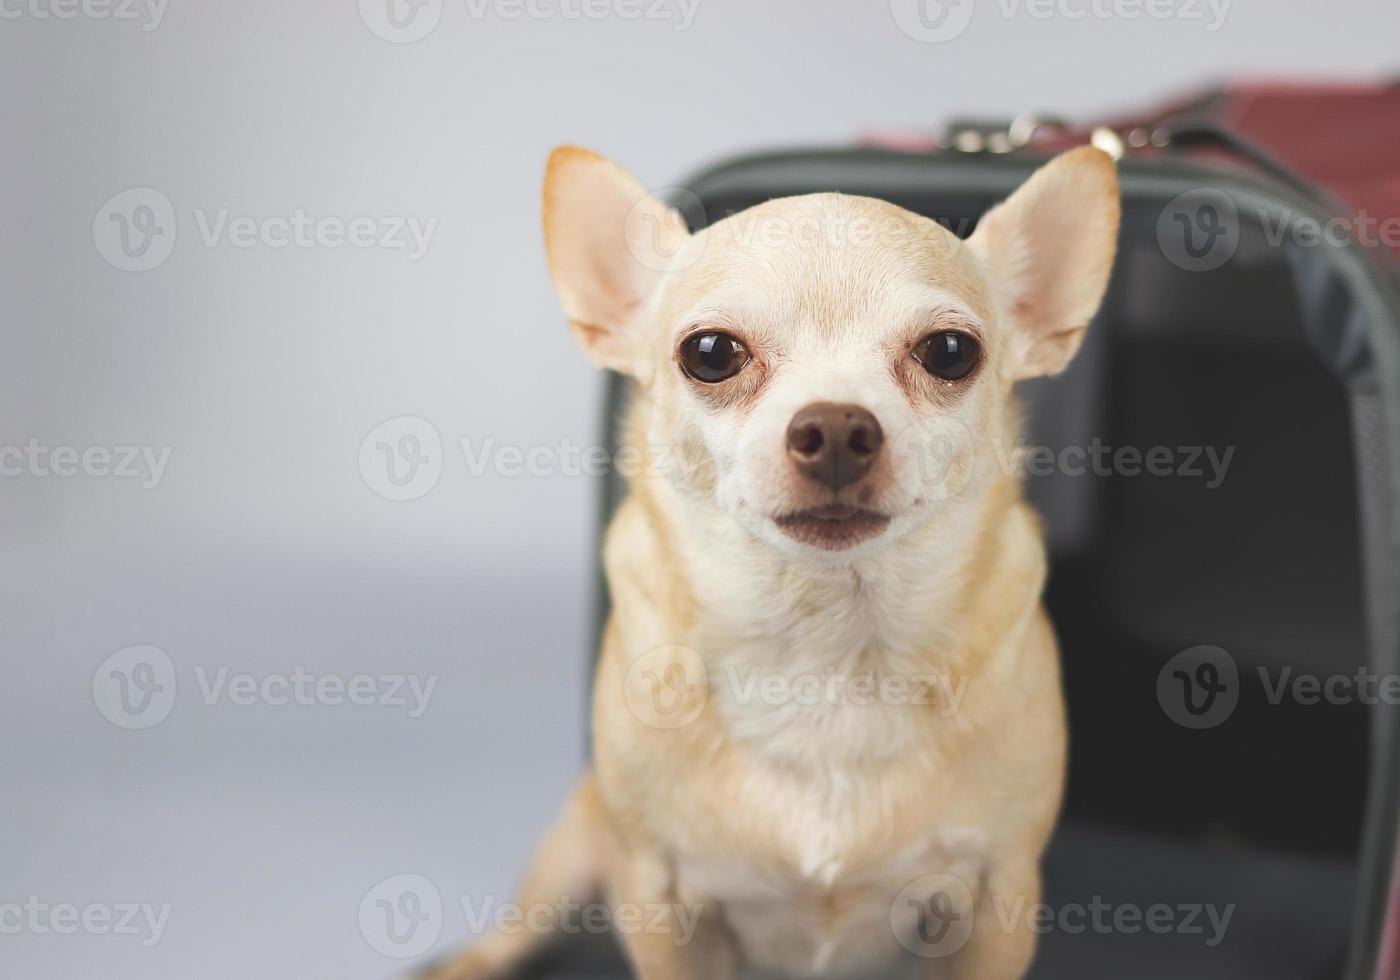 cane chihuahua marrone seduto e guardando la fotocamera davanti alla borsa per animali domestici del viaggiatore su sfondo bianco con spazio per la copia. viaggiare in sicurezza con gli animali. foto